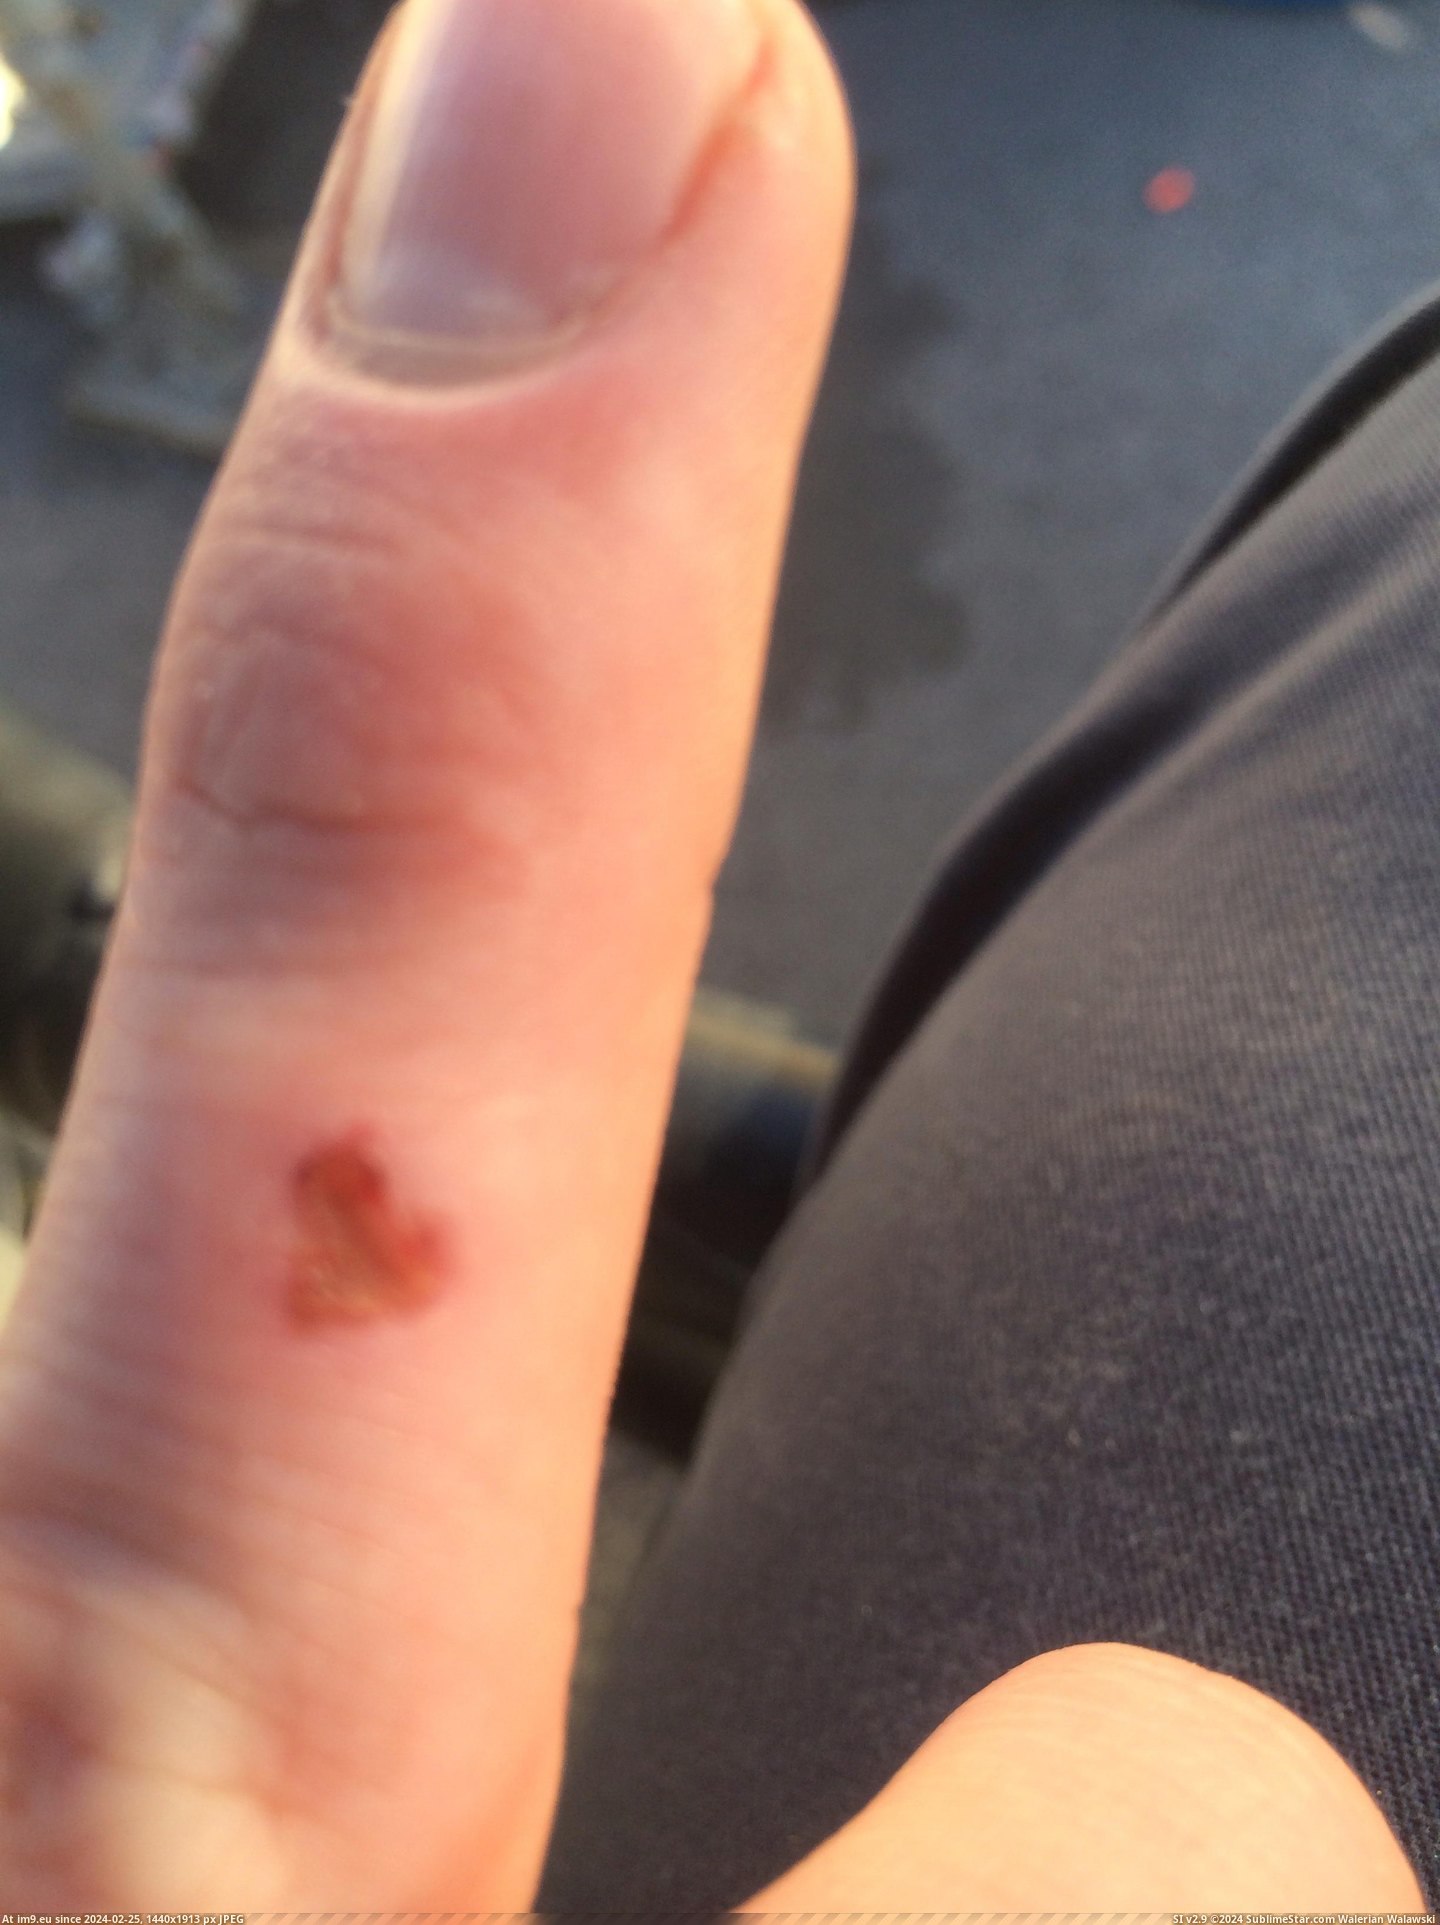 #Finger #Kind #Scab #Heart [Mildlyinteresting] My finger scab looks kind of like a heart. Pic. (Изображение из альбом My r/MILDLYINTERESTING favs))